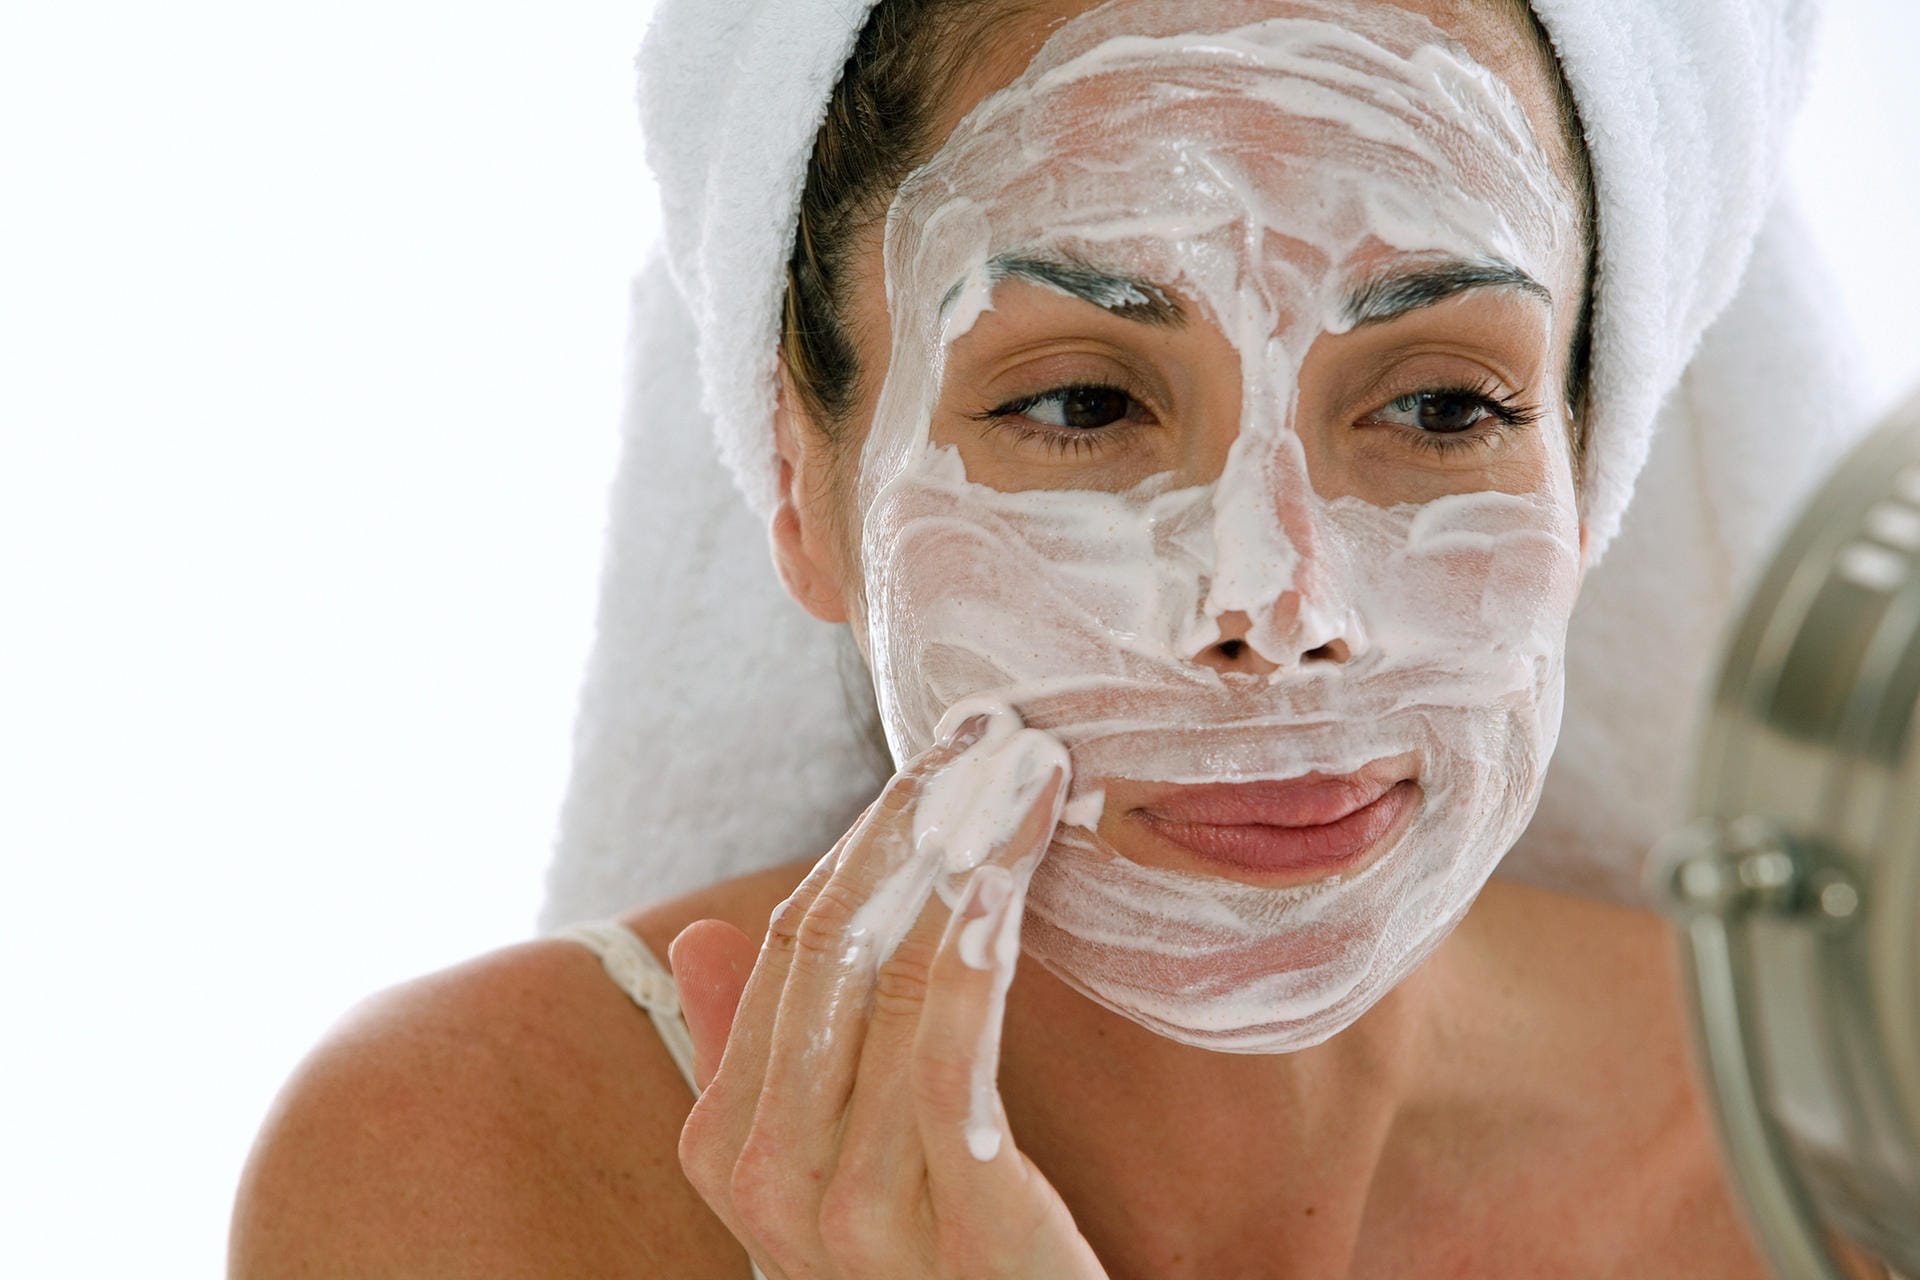 Gesichtsmaske: Mit einem hohen Feuchtigkeitsgehalt und ätherischen Ölen kann der Haut Feuchtigkeit zurück gegeben werden.